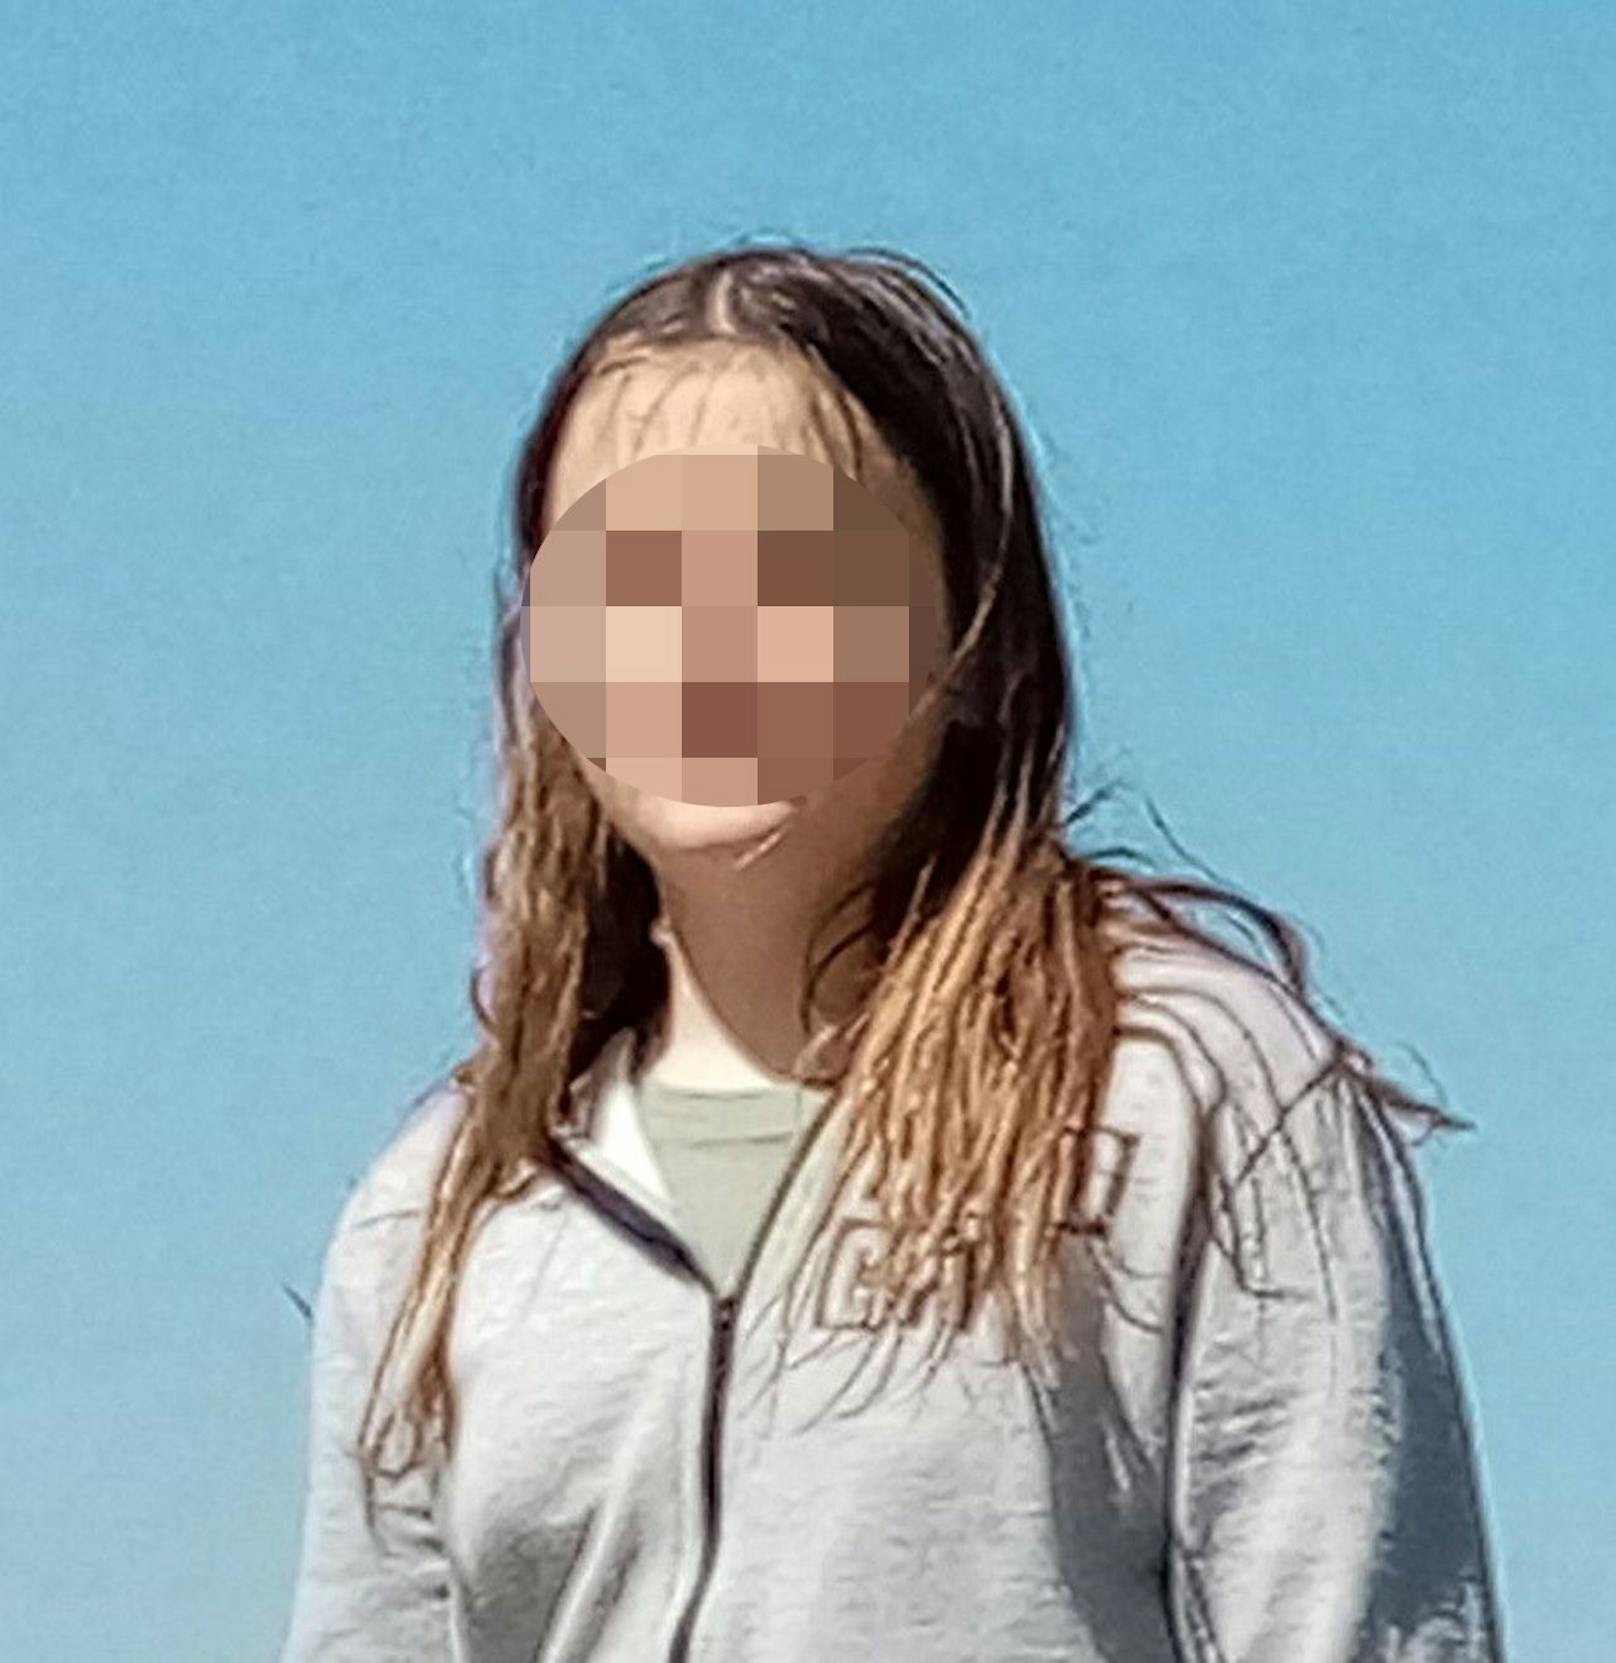 Die Polizei suchte nach zwei vermissten Mädchen. Neben Mia Sophie wurde auch Sarah (12) vermisst.